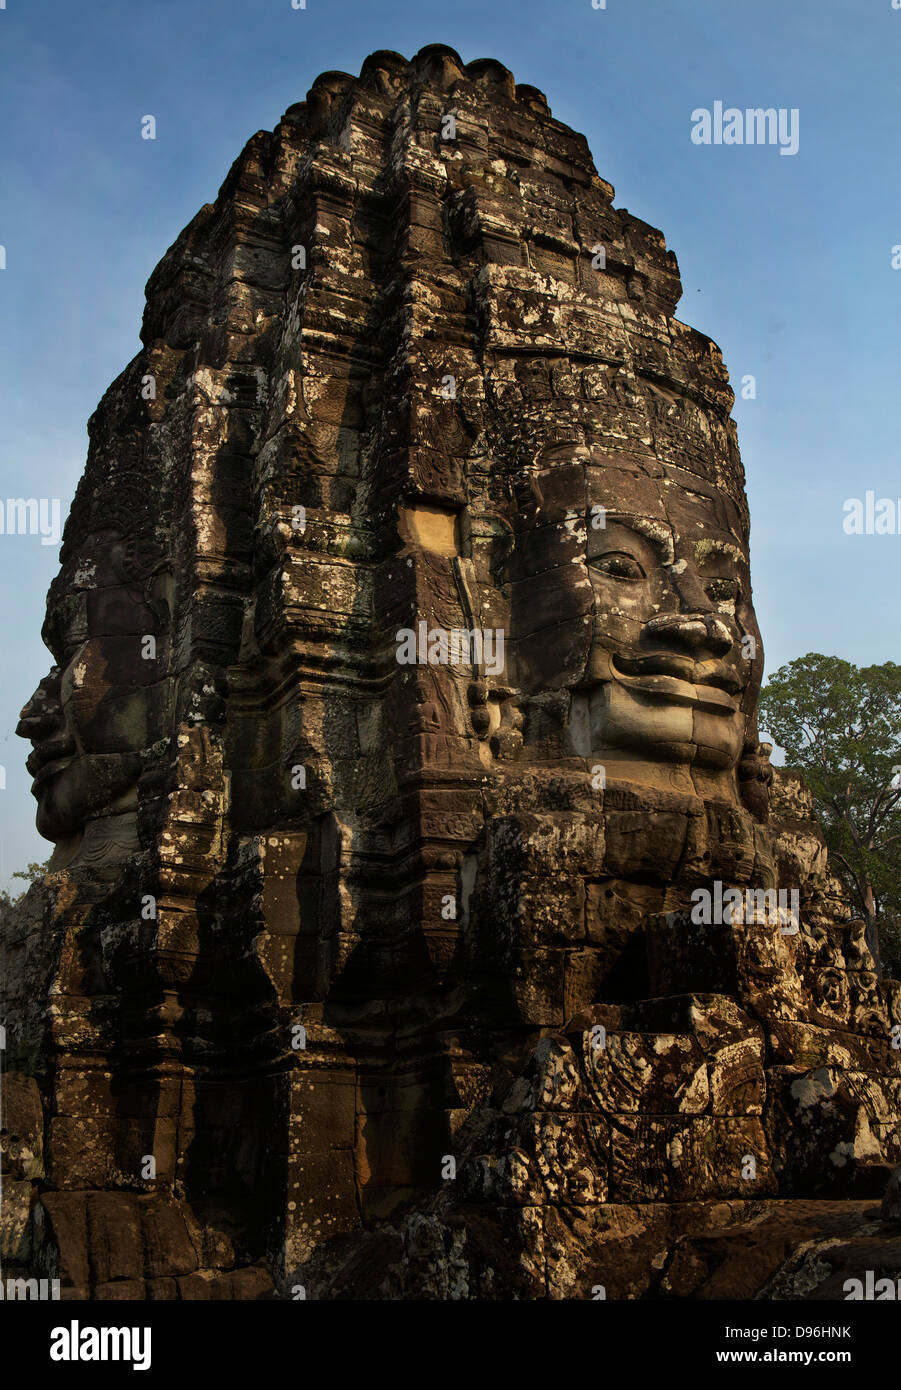 Templo Bayon, Ankor. Bayon es conocido por su enorme piedra caras del bodhisattva Avalokiteshvara, Ankor Wat Camboya Foto de stock